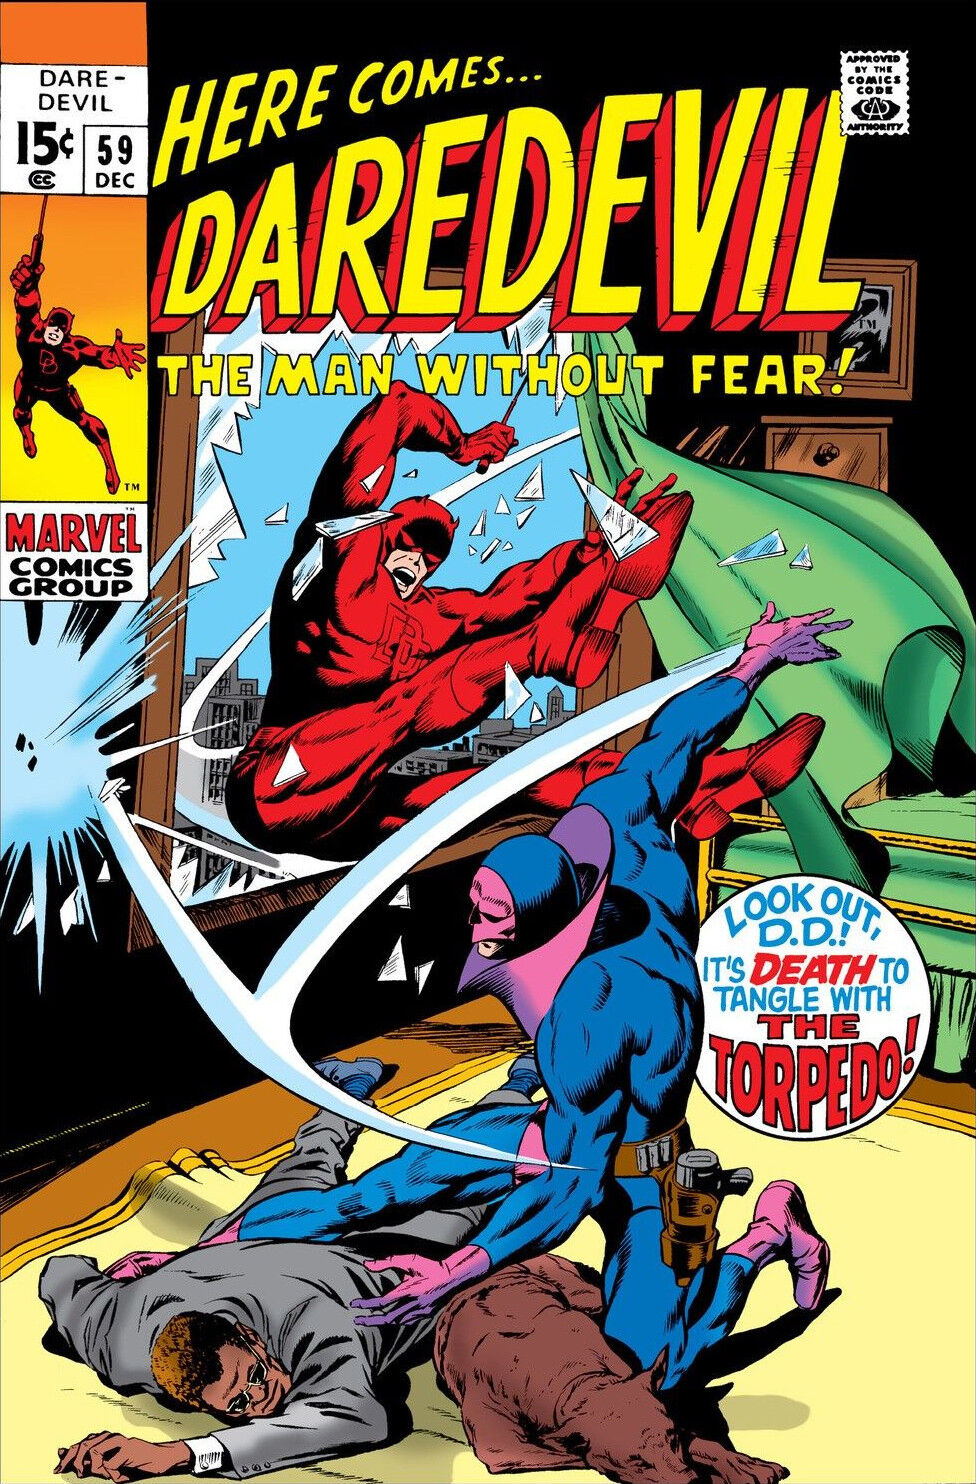 Daredevil Volume 1 #59